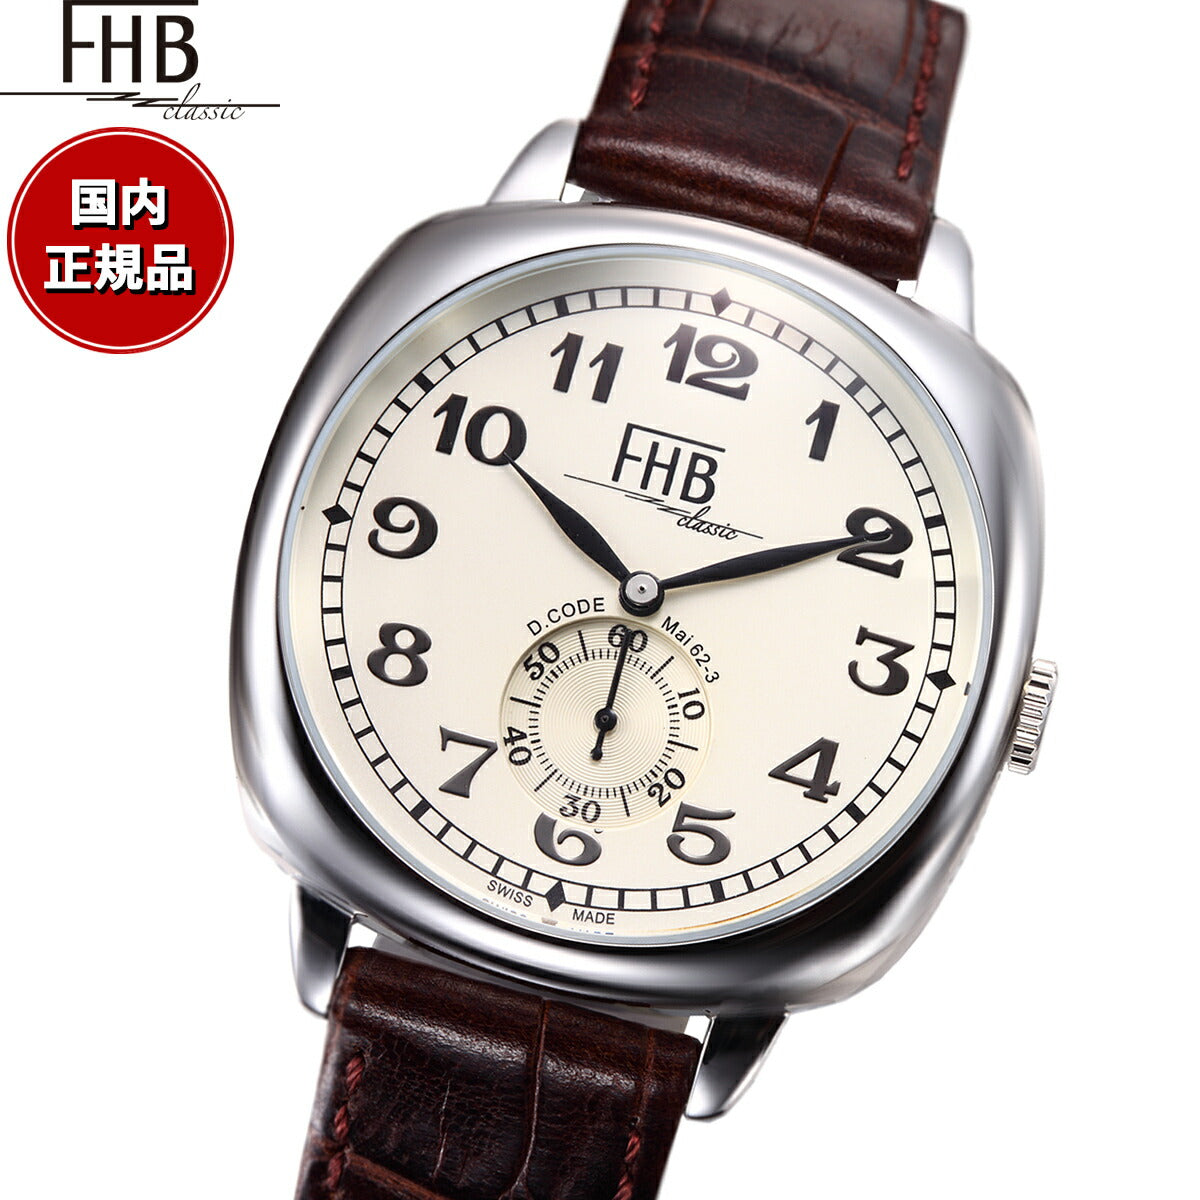 あなたにおすすめの商品 FHB腕時計 F901-SWR 時計 - www.coolpreschool.com